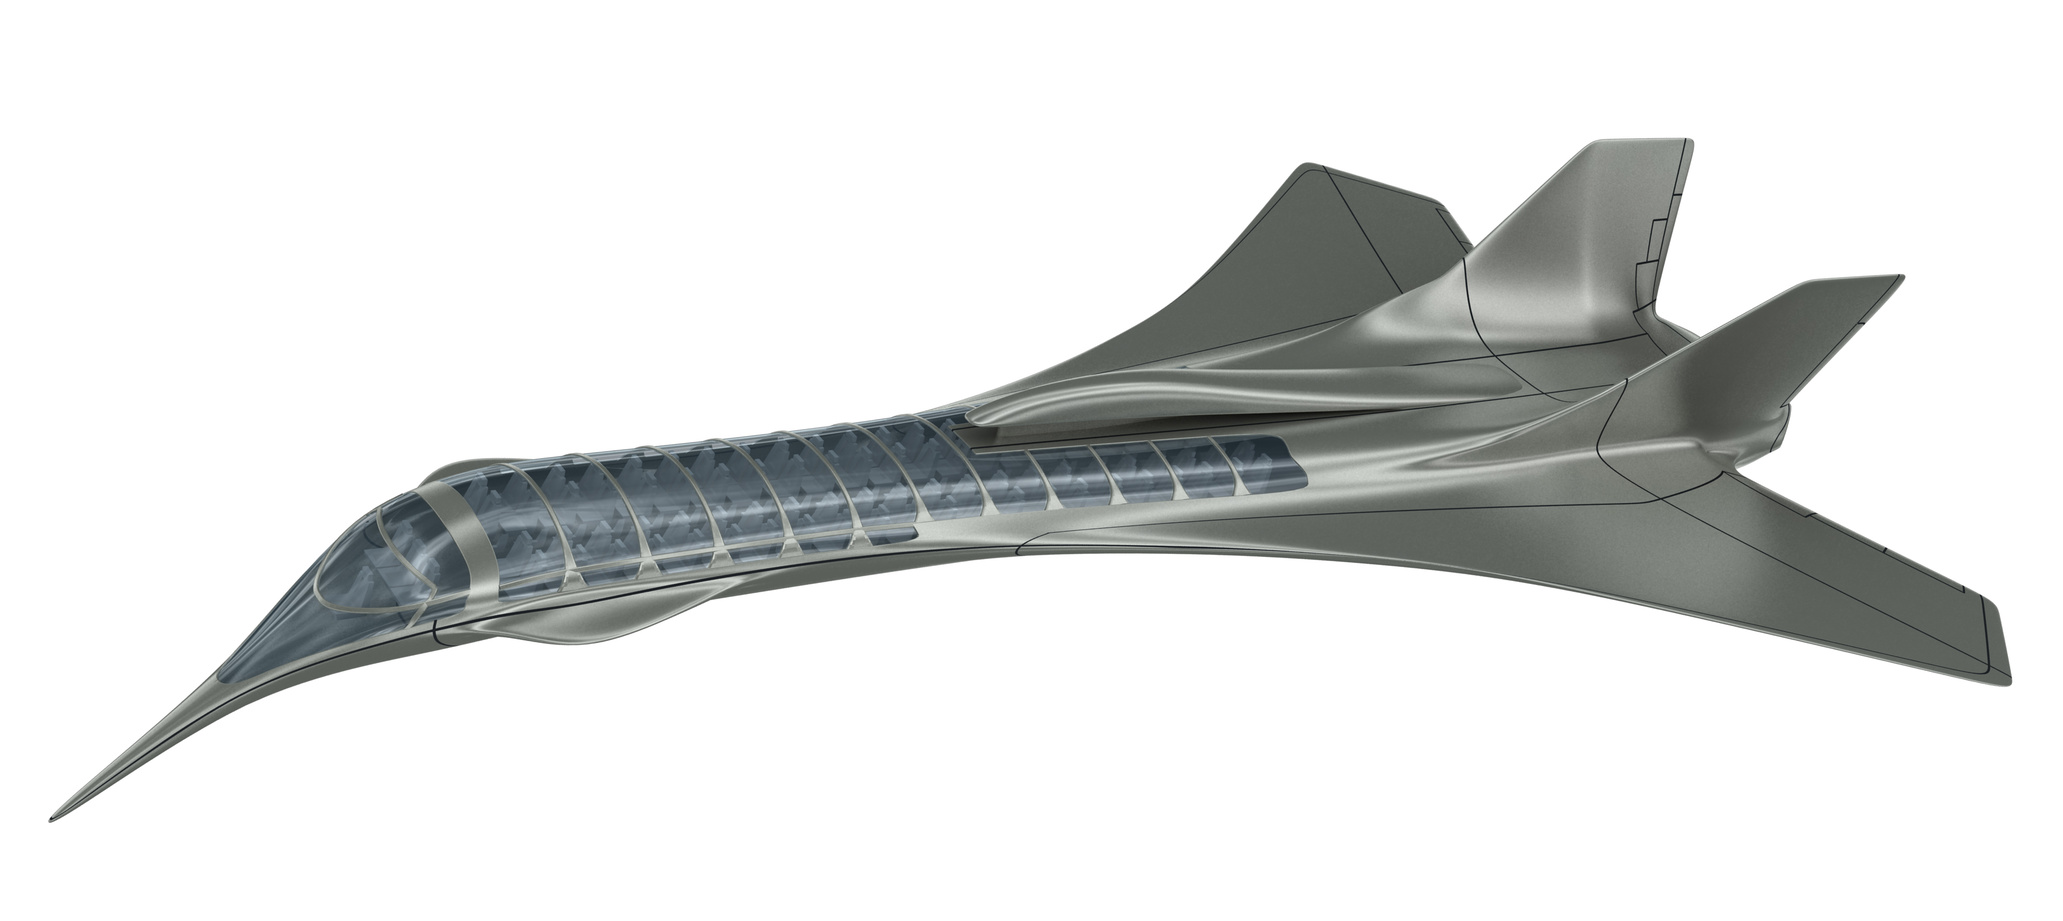 Plusieurs projets d’avions supersoniques ambitionnent de reprendre le flambeau du Concorde. © 3000ad, Fotolia

